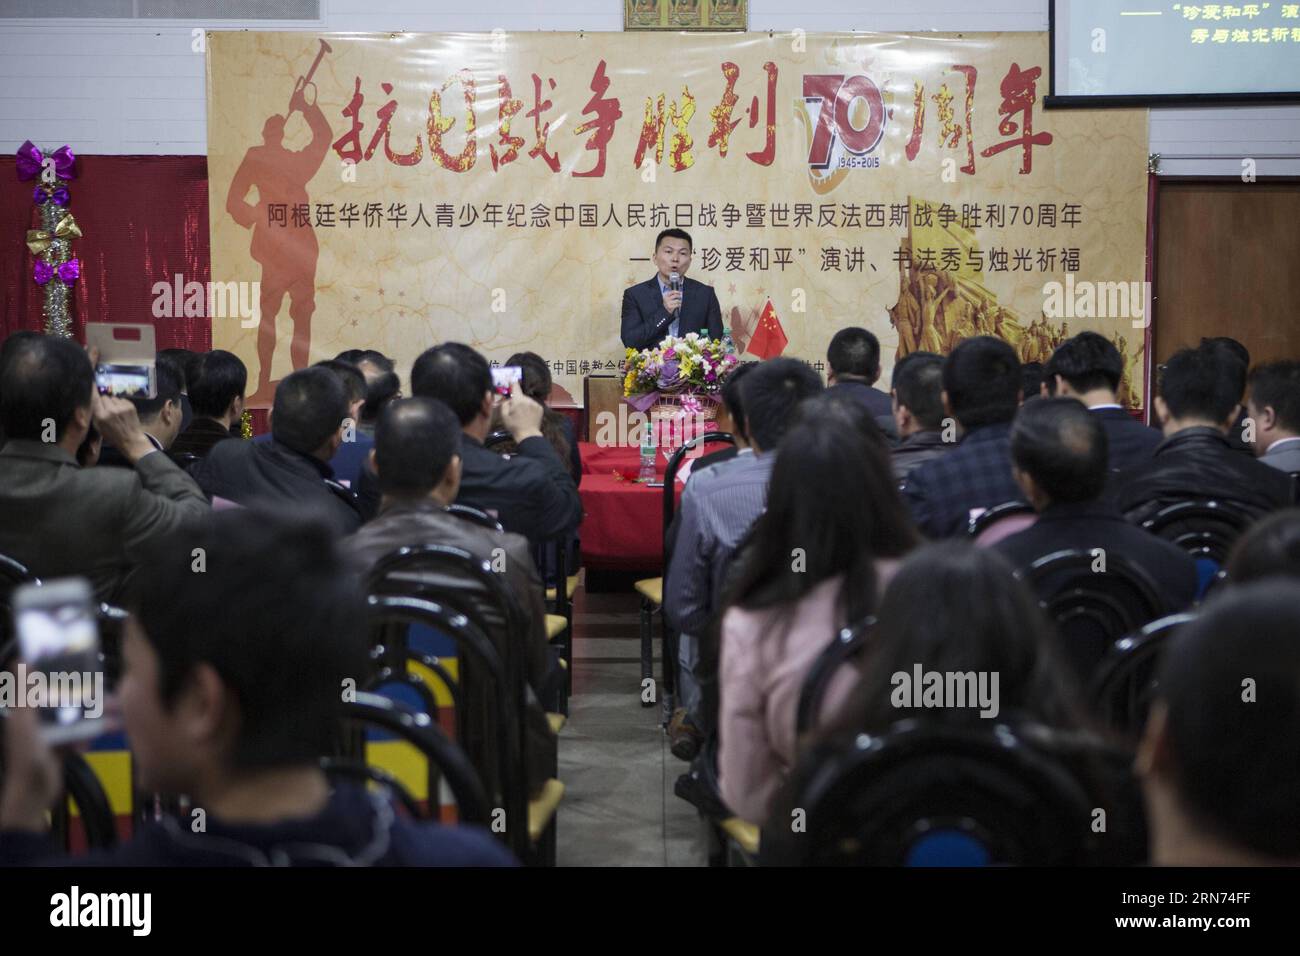 Der politische Berater der chinesischen Botschaft in Argentinien, Wang Xiao Lin (C), hält eine Rede im Rahmen einer Veranstaltung zum 70. Jahrestag des Sieges des chinesischen Volkskrieges gegen die japanische Aggression sowie zum Ende des Zweiten Weltkriegs. in Buenos Aires, Argentinien, am 16. August 2015. Chinesische Einwanderer feierten in Argentinien den 70. Jahrestag des Sieges des chinesischen Volkskrieges gegen die japanische Aggression sowie das Ende des Zweiten Weltkriegs Martin Zabala) (mz) (da) ARGENTINA-BUENOS AIRES-CHINA-SOCIETY-ANNIVERSARY e MARTINxZABALA PUBLIC Stockfoto